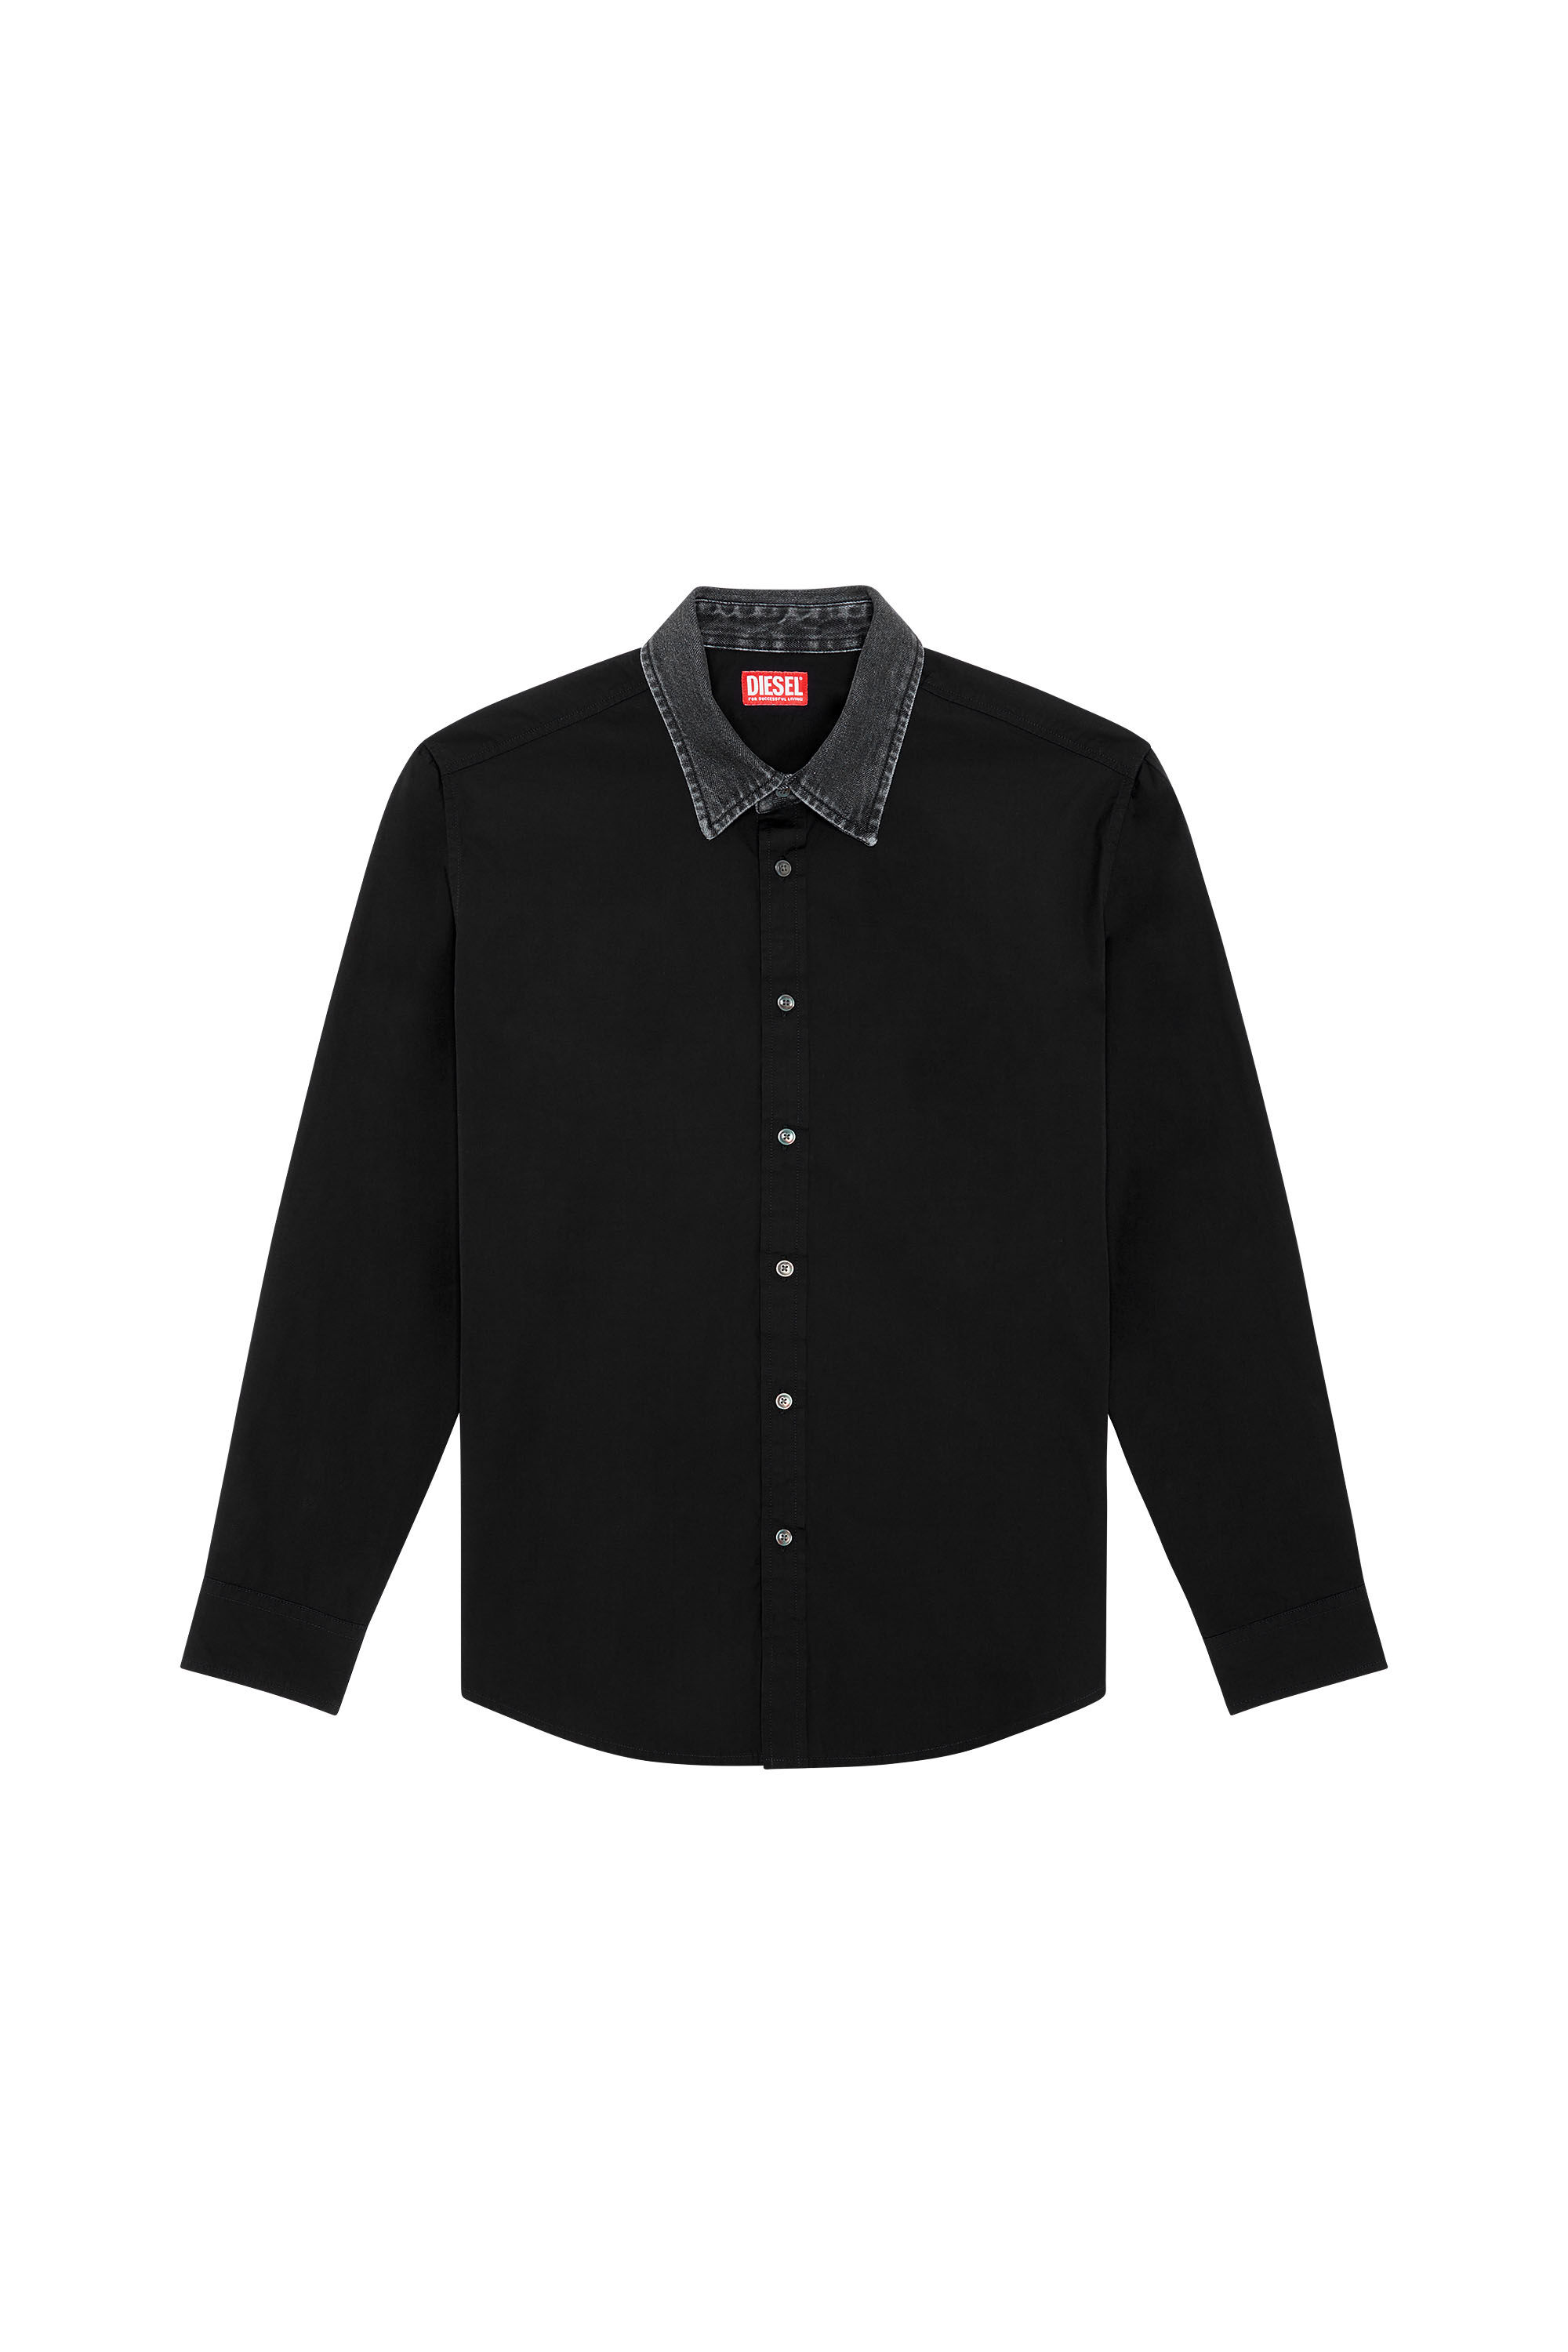 Diesel - S-HOLLS, Man Cotton shirt with denim collar in Black - Image 2